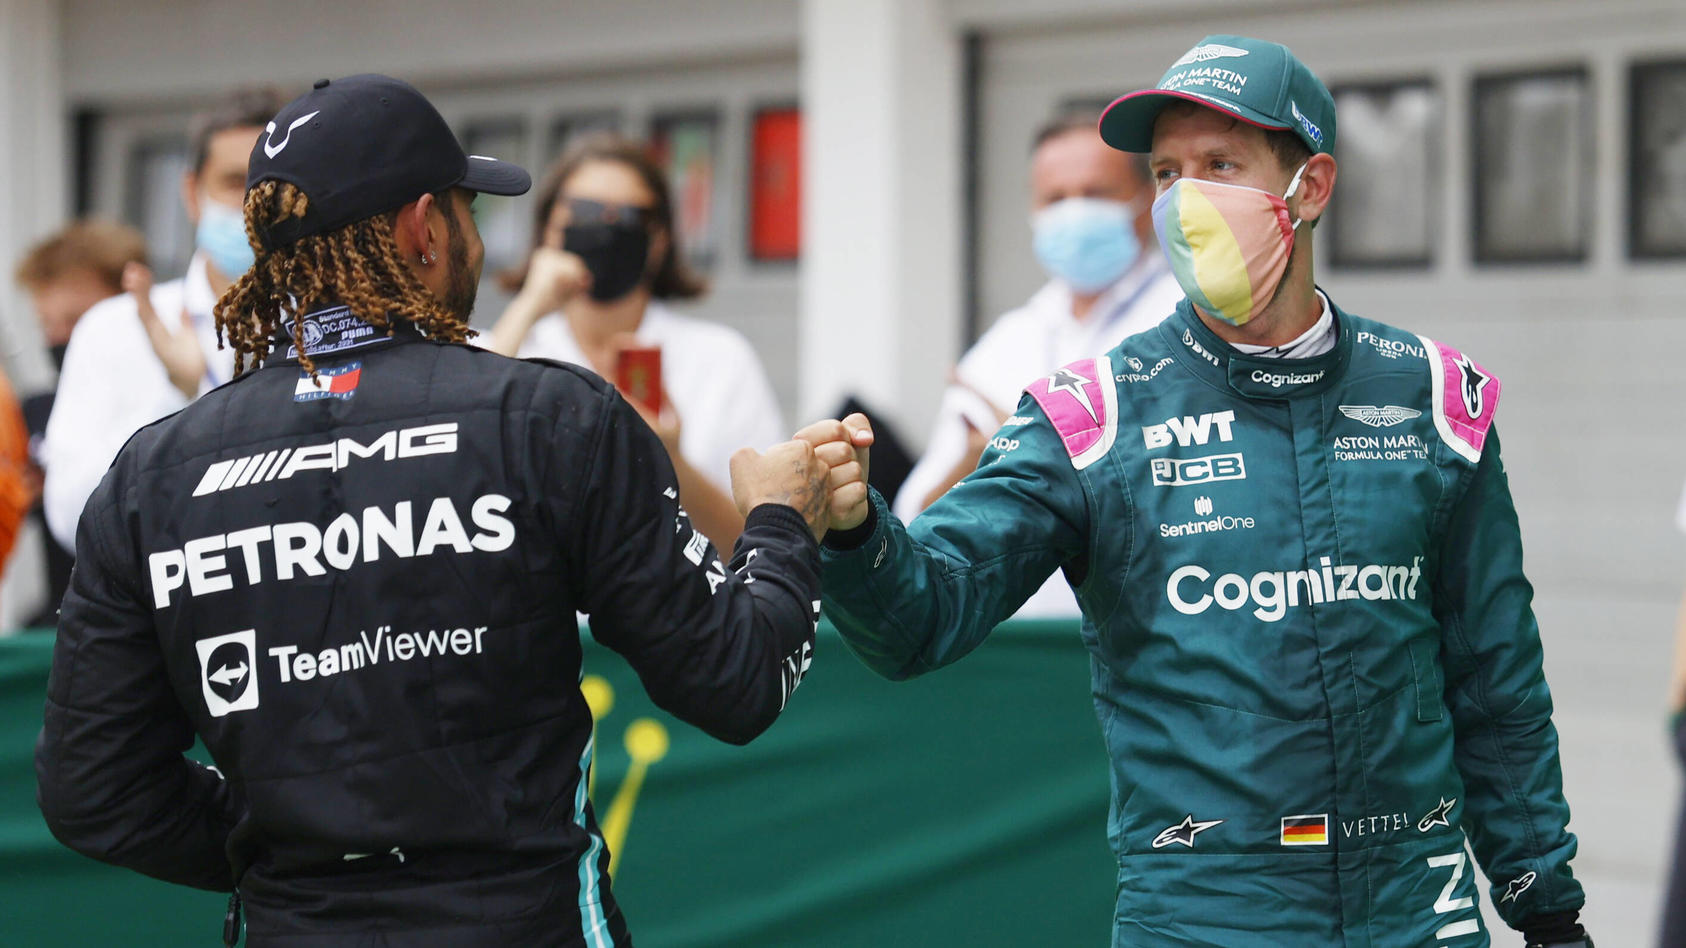 In den Farben getrennt, in der Sache vereint: Lewis Hamilton (l.) und Sebastian Vettel setzen sich vehement für Gleichberechtigung ein.